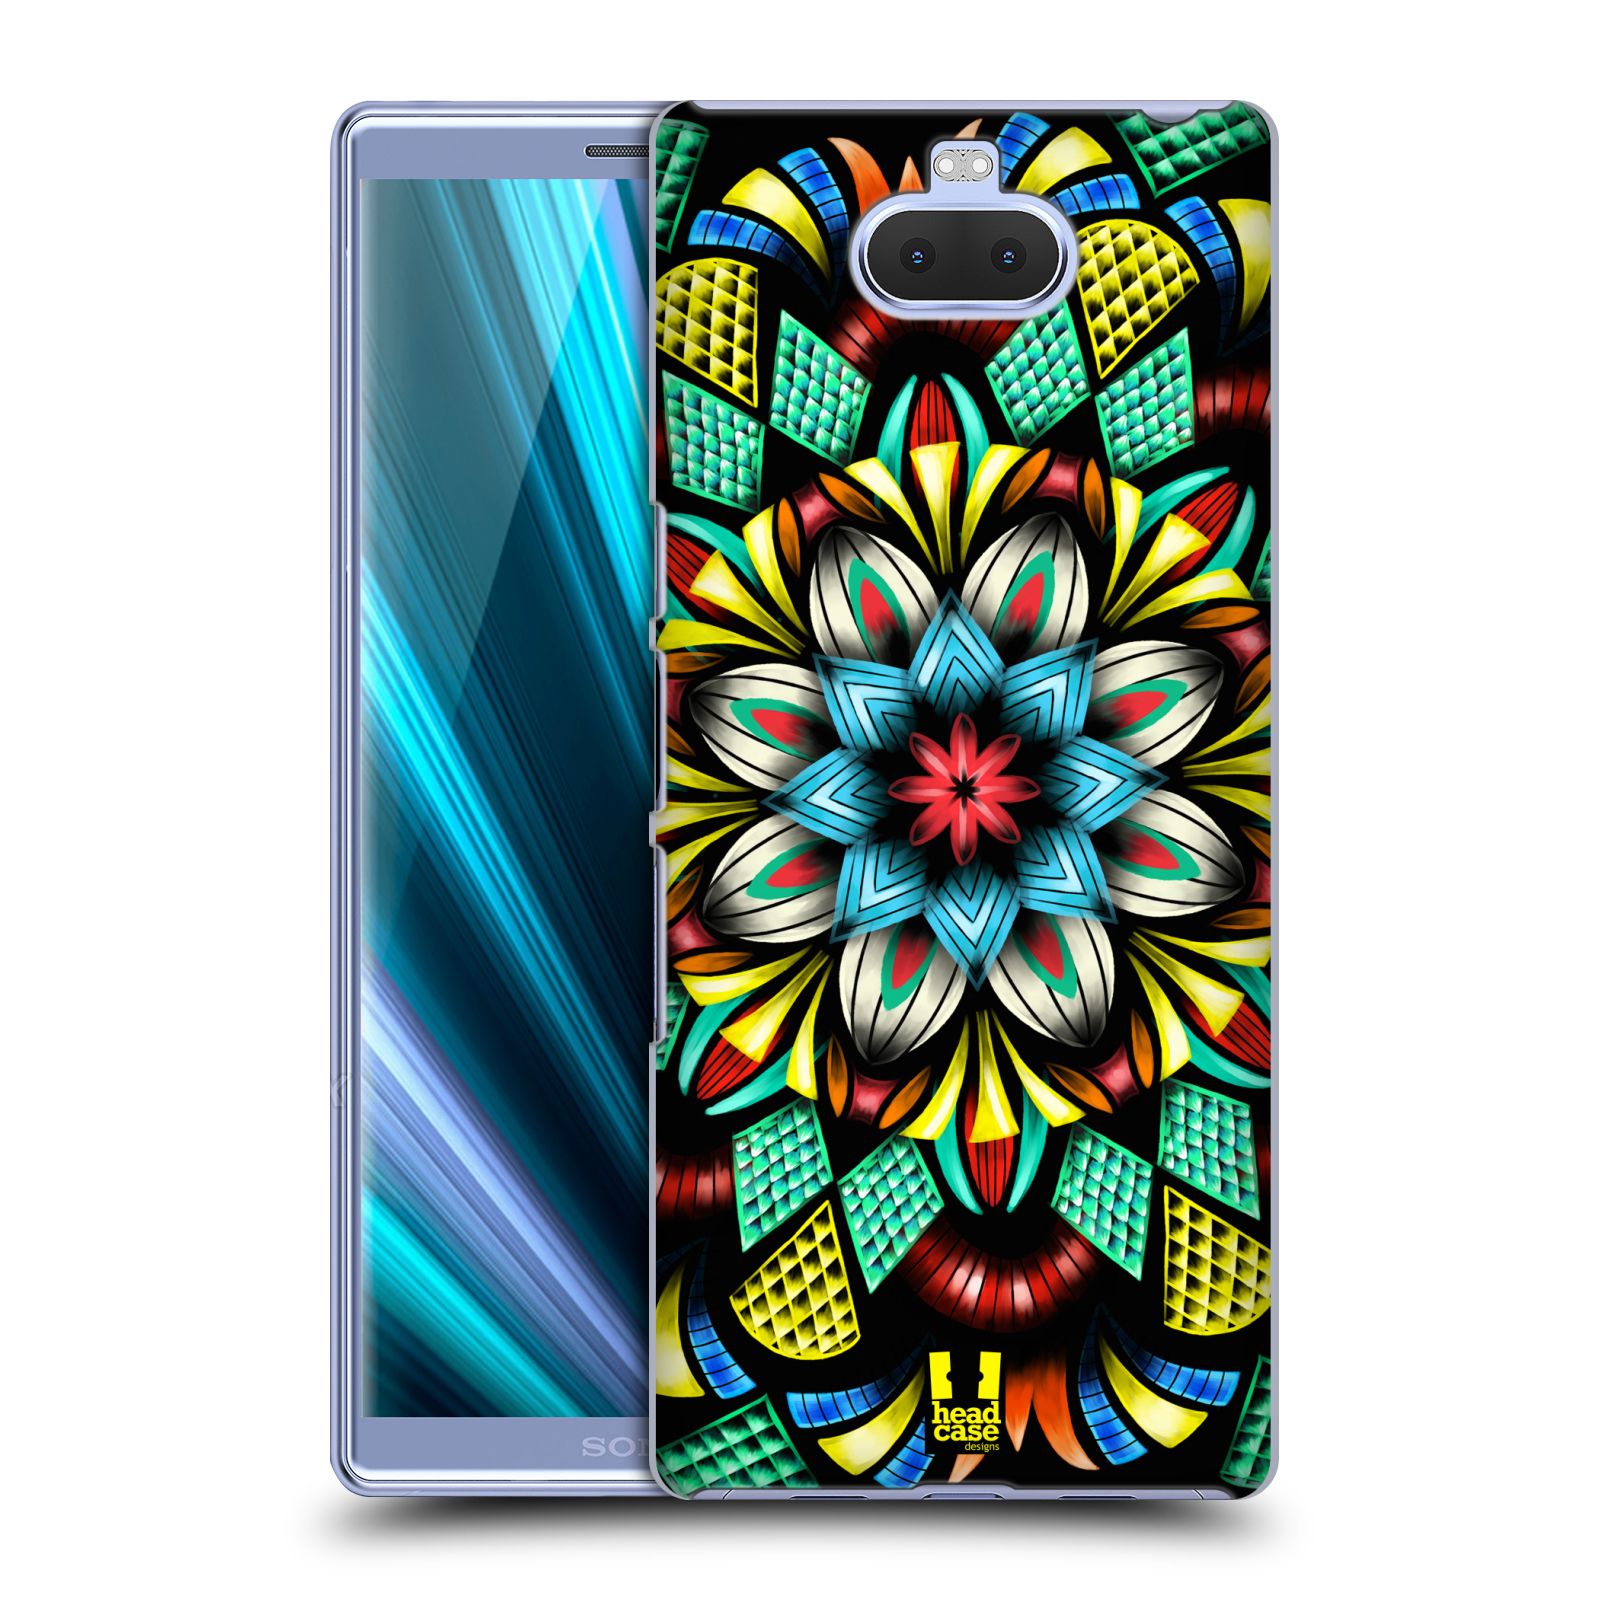 Pouzdro na mobil Sony Xperia 10 - Head Case - vzor Indie Mandala kaleidoskop barevný vzor TRADIČNÍ